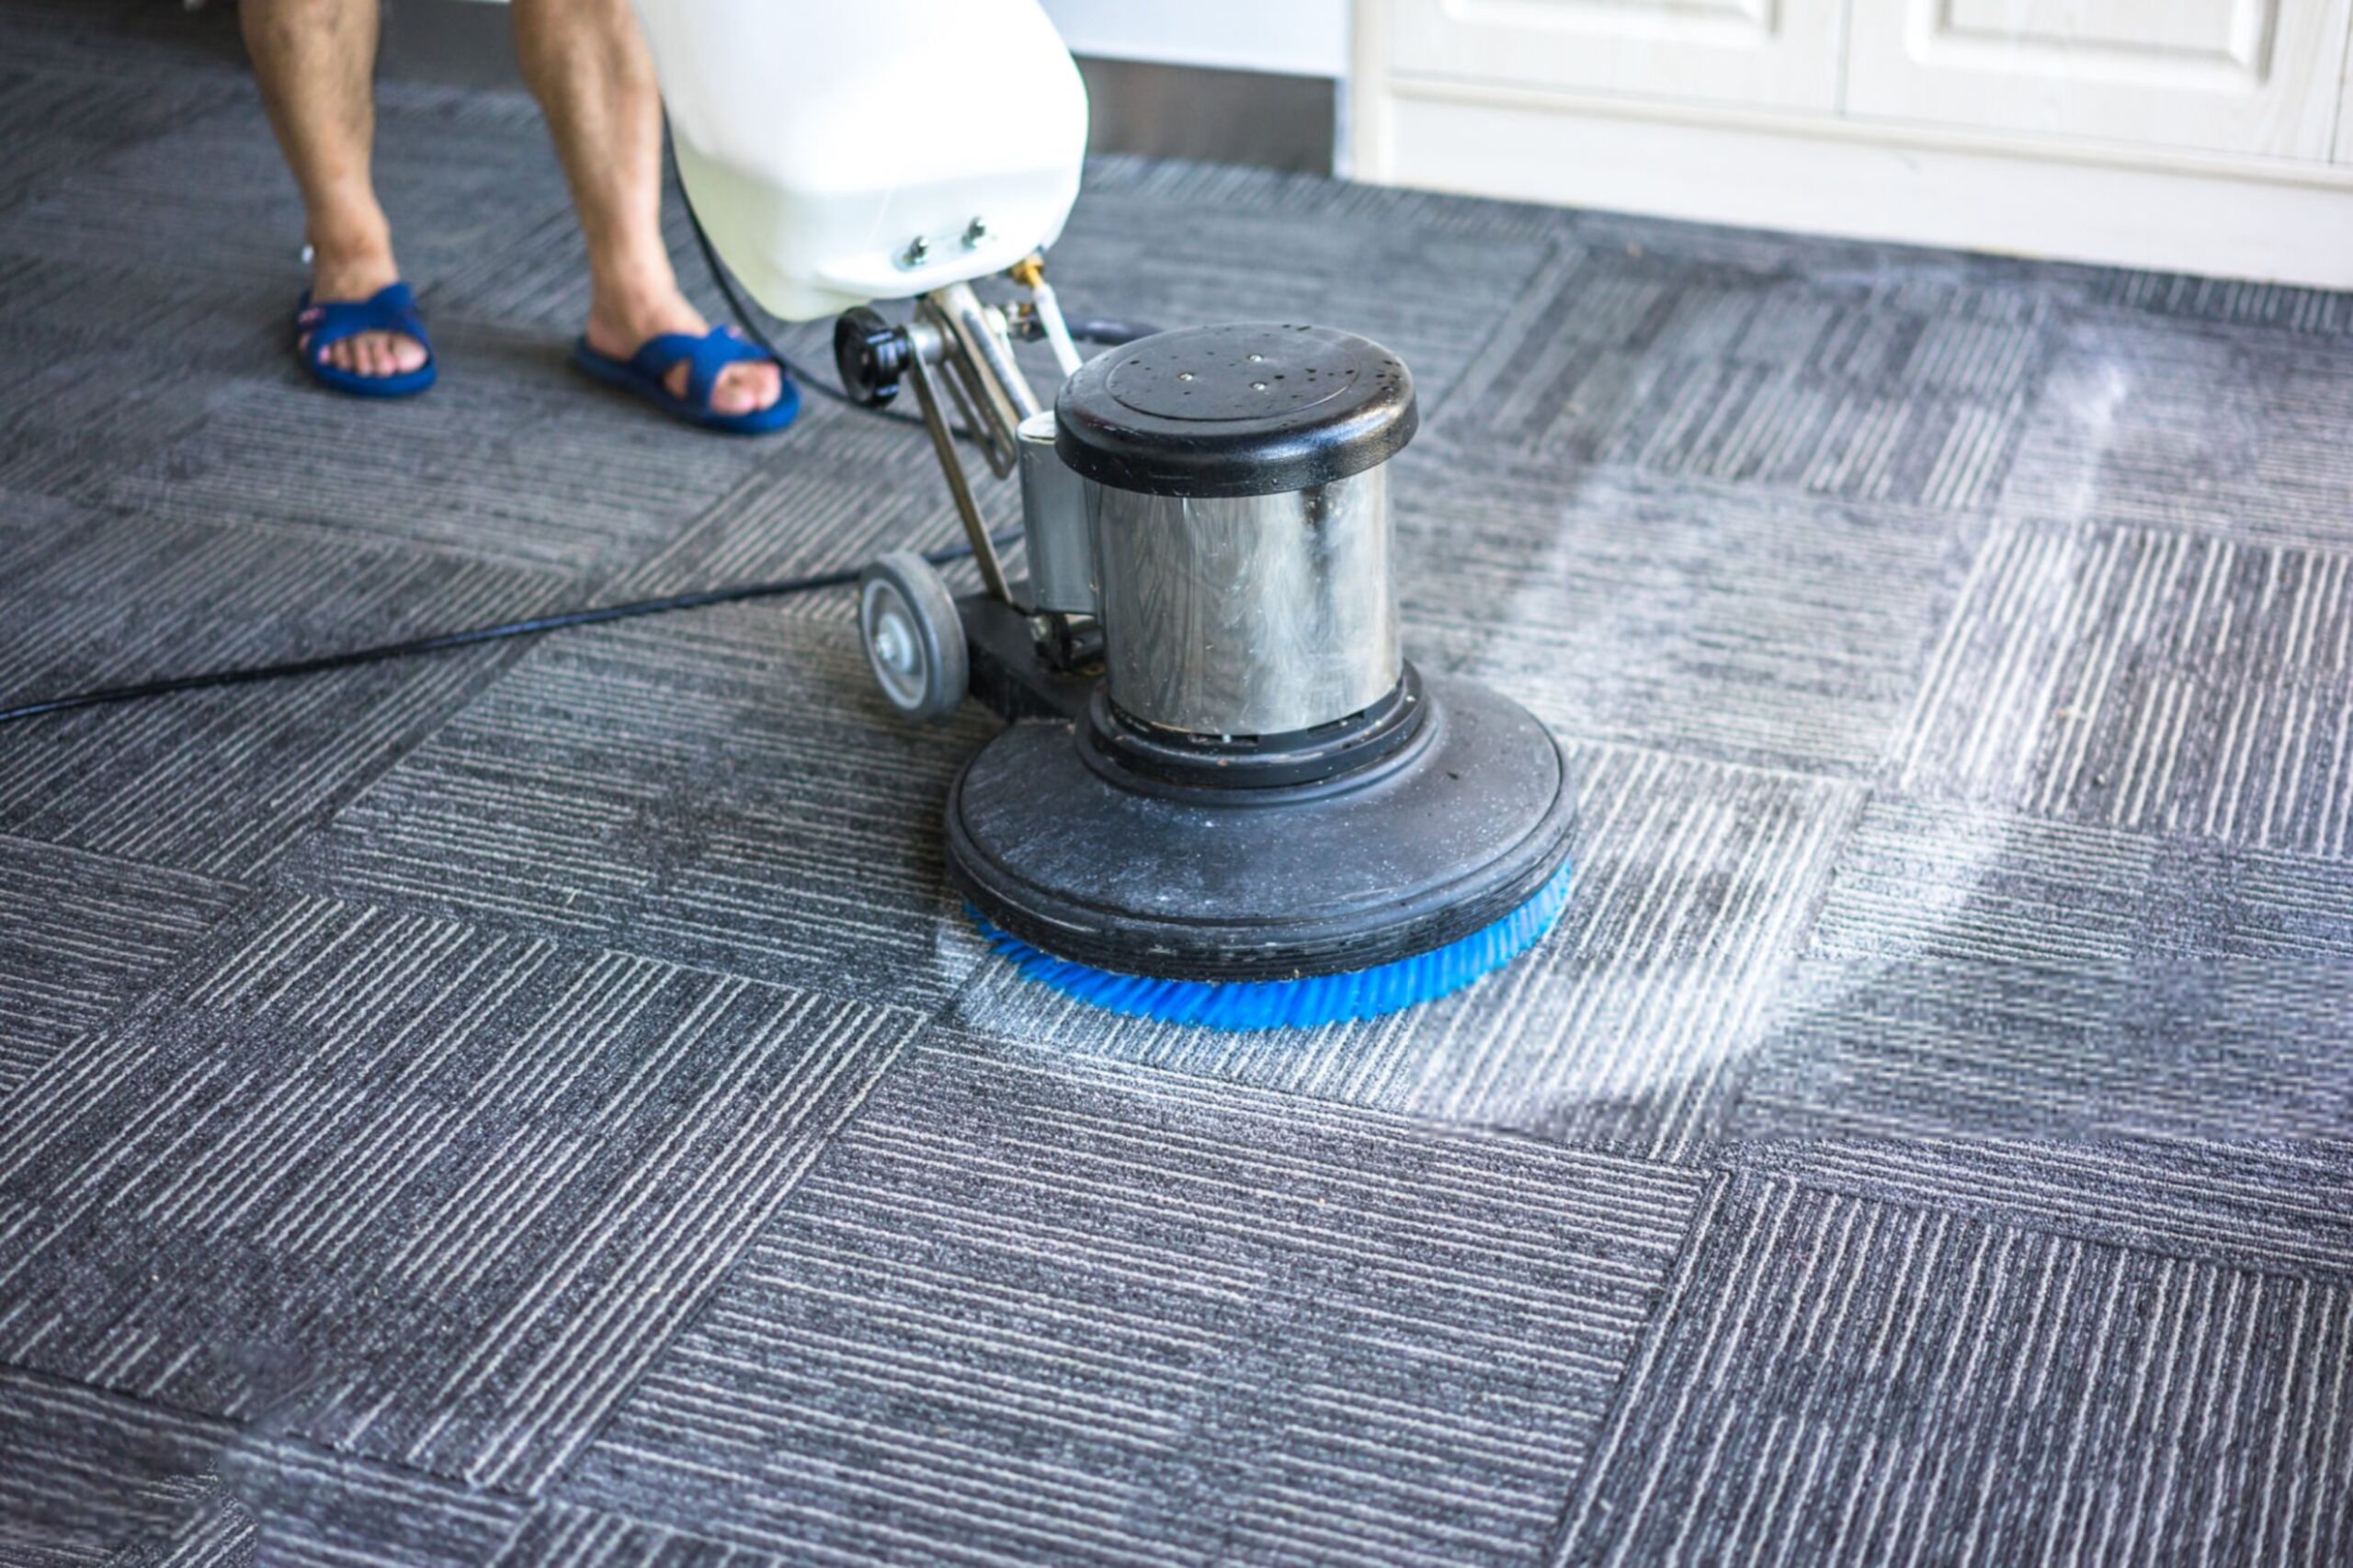 تمیز کردن فرش با بخارشوی